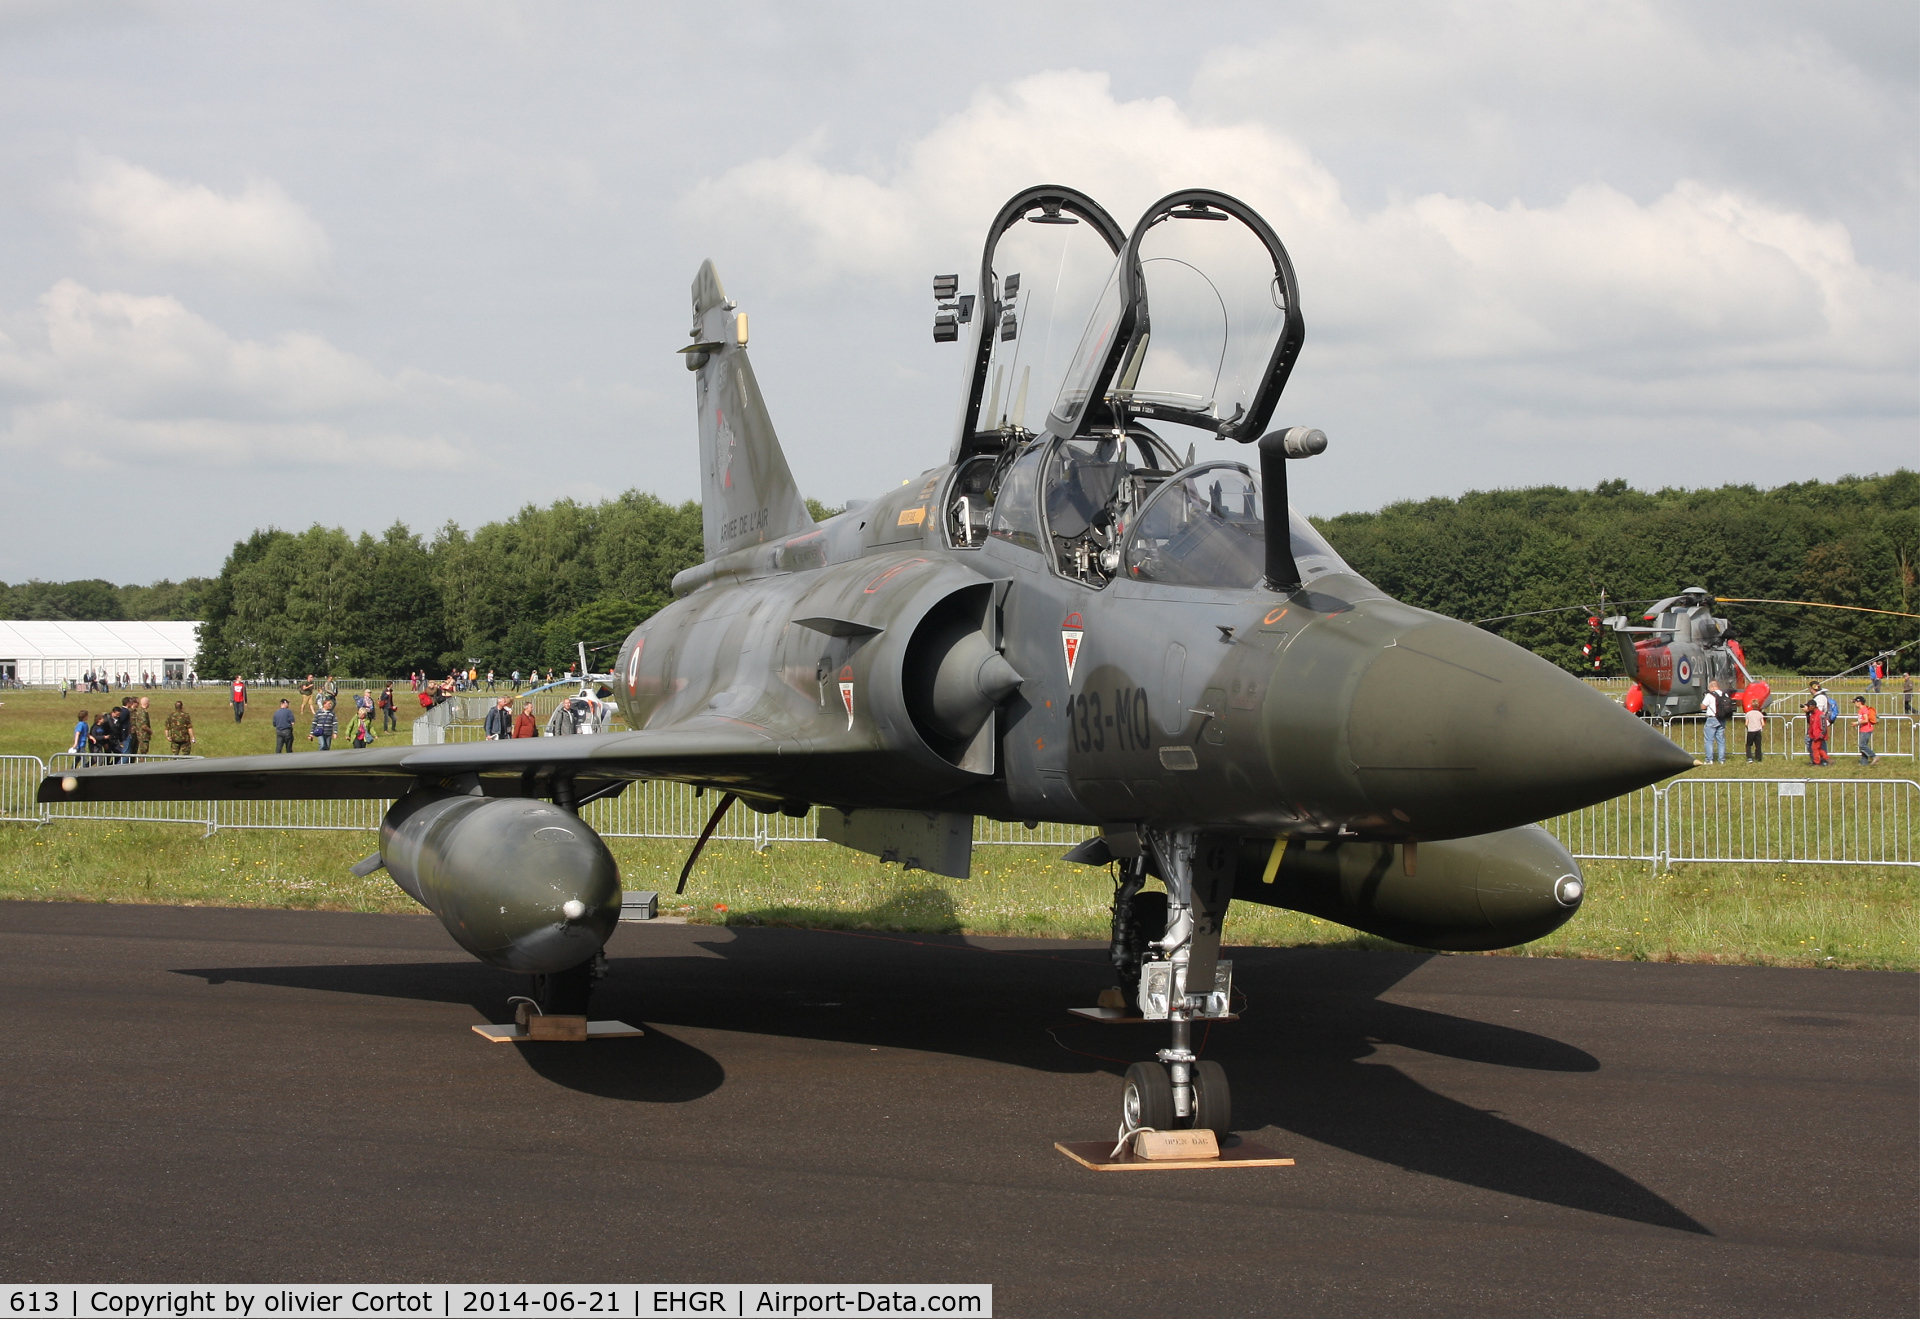 613, Dassault Mirage 2000D C/N 410, front view